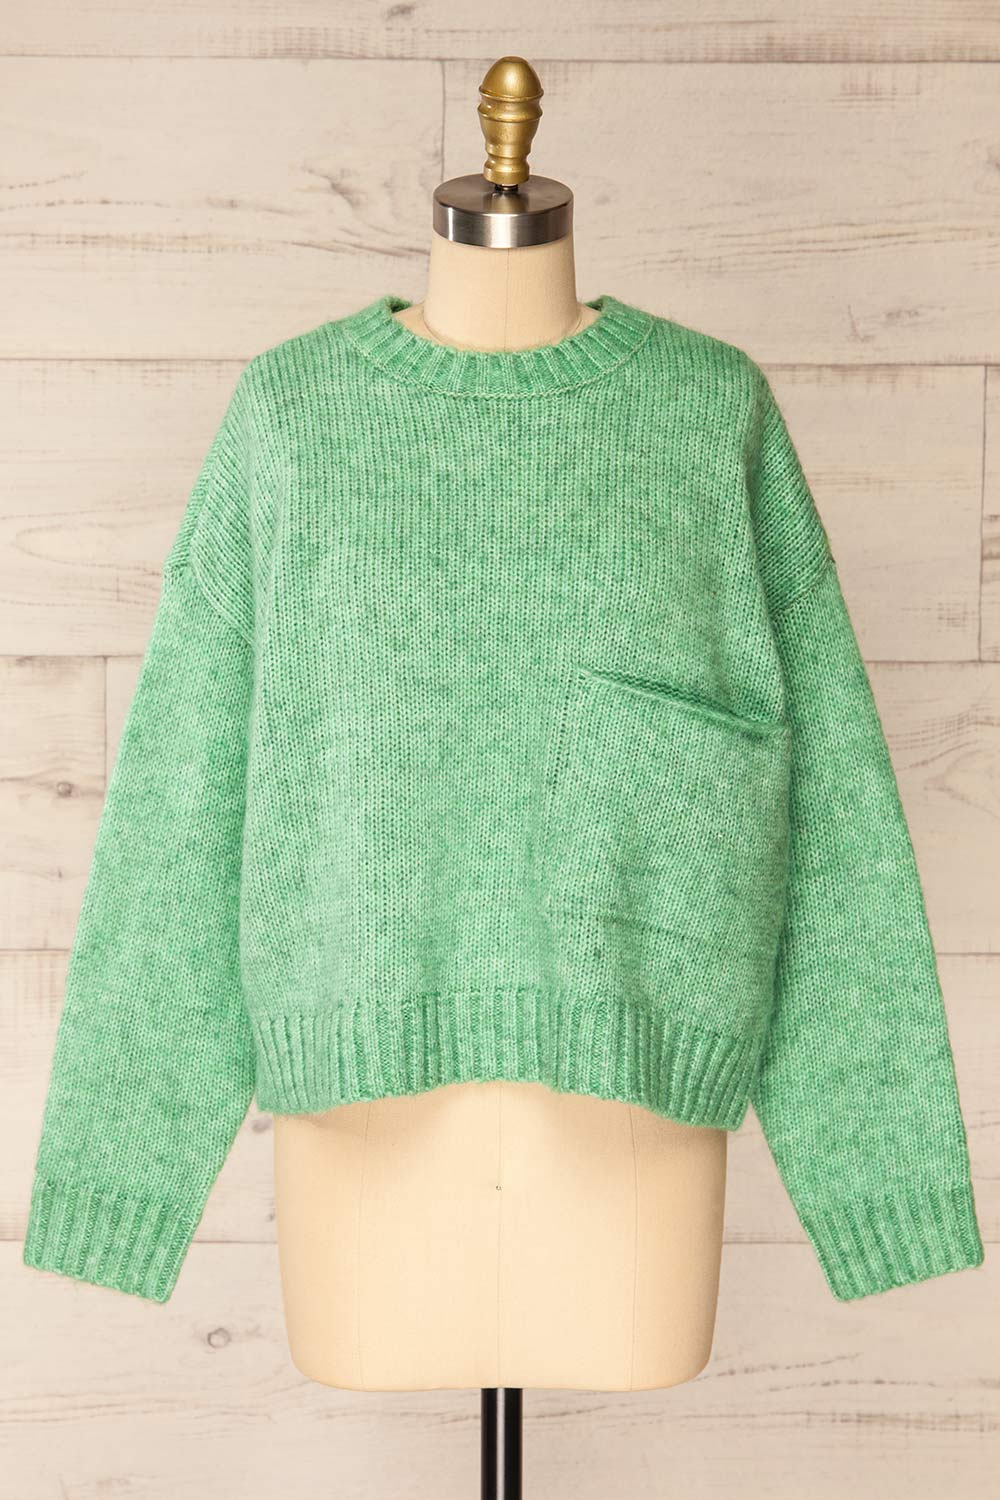 Merida Green Oversized Knit Sweater w/ Pocket | La petite garçonne front view